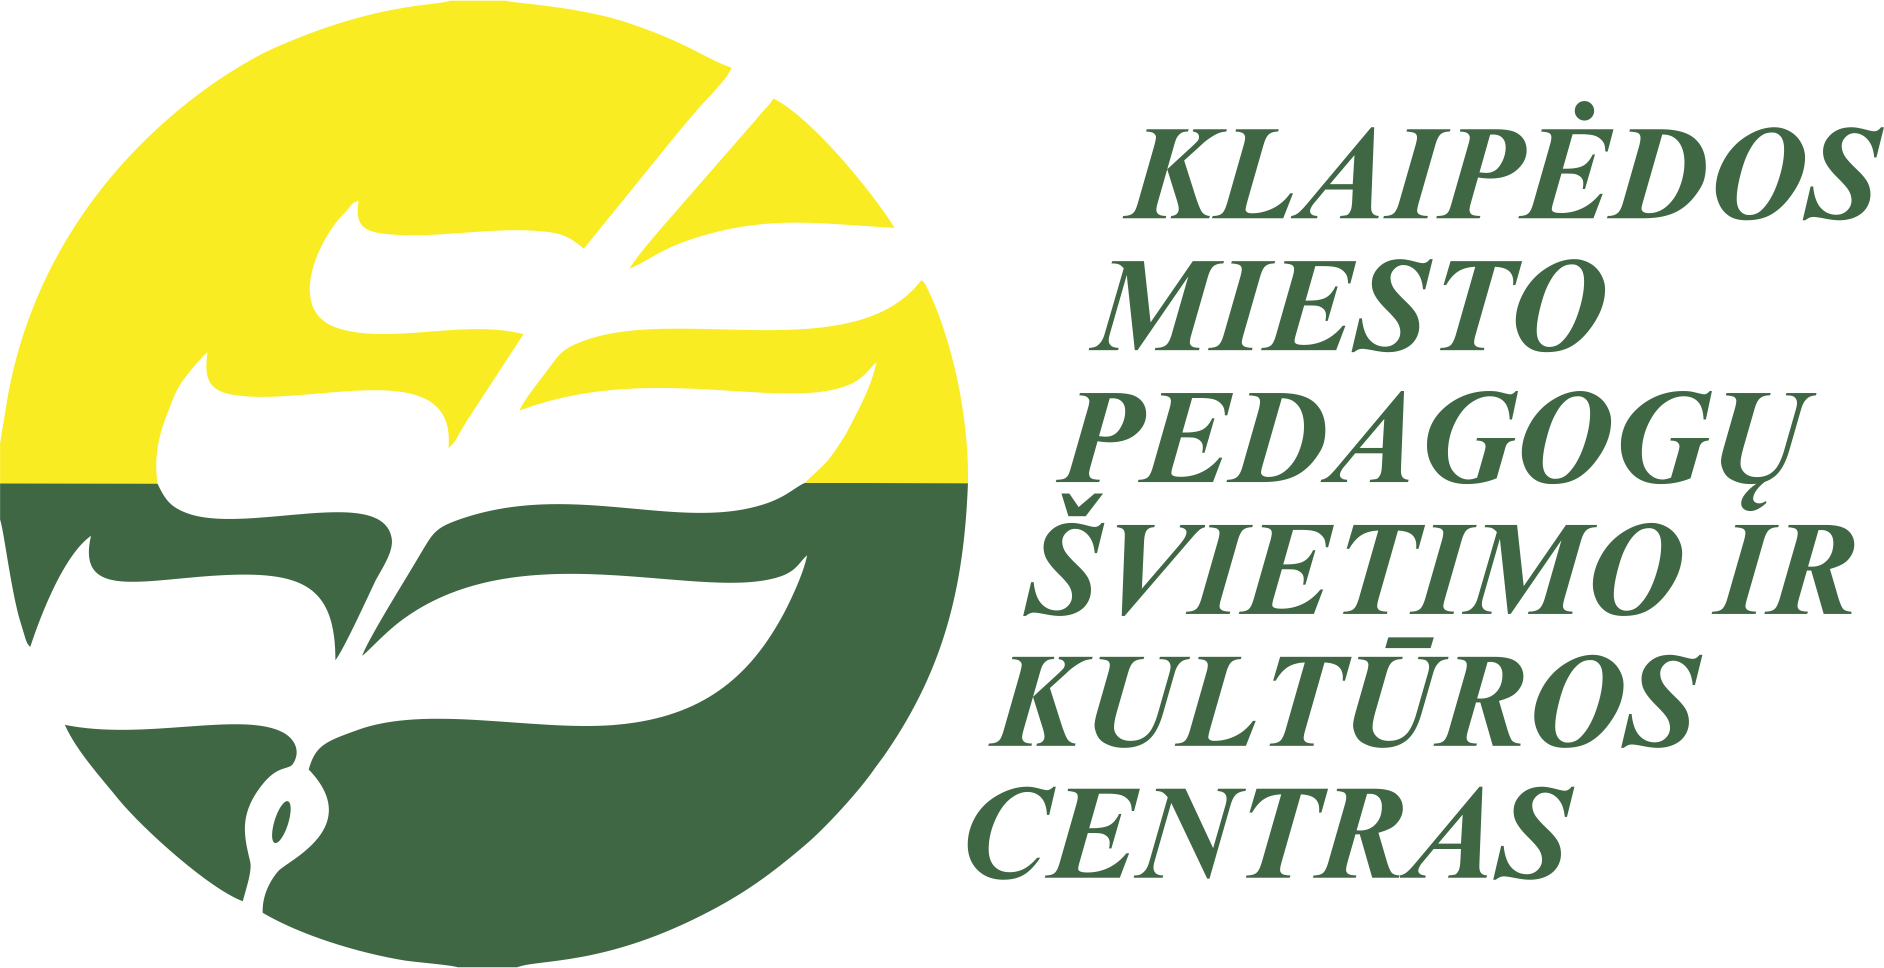 Klaipėdos miesto pedagogų švietimo ir kultūros centras (KPŠKC)